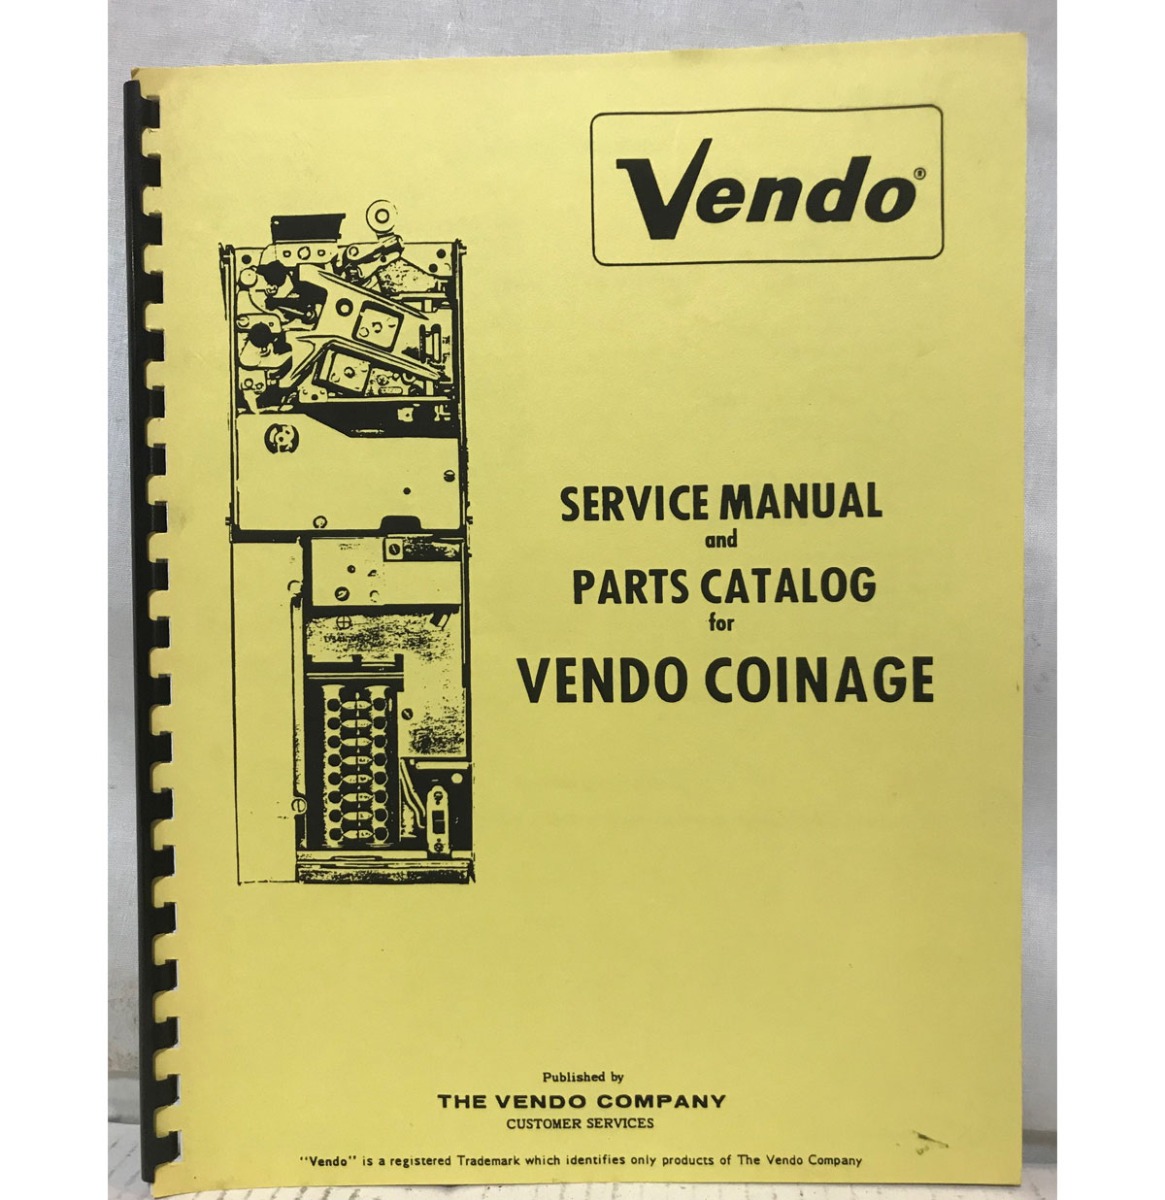 Service Manual En Parts Catalogus Voor Vendo Coinage